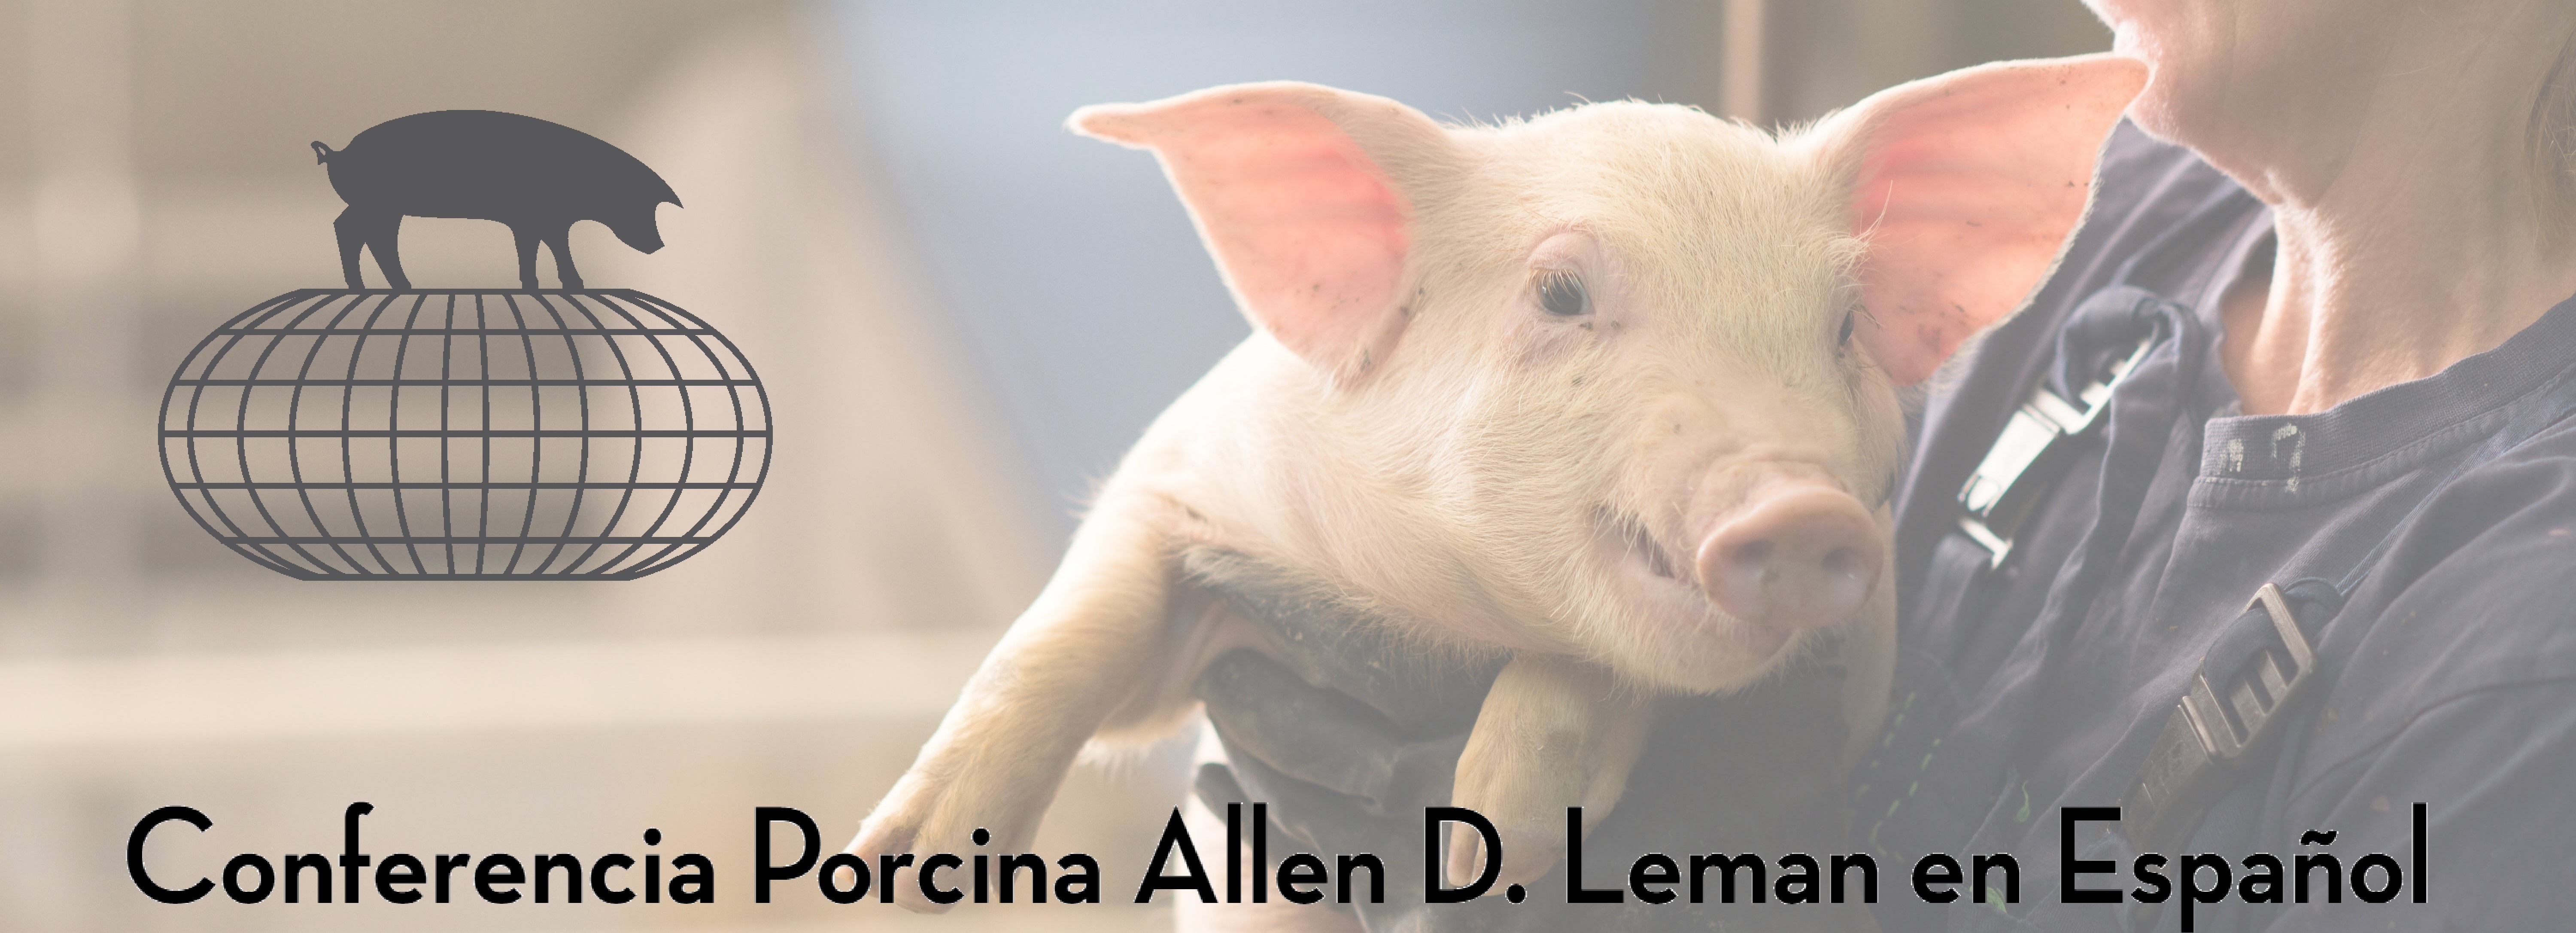 Bienvenido a la página de la Conferencia Porcina de la Leman en Español